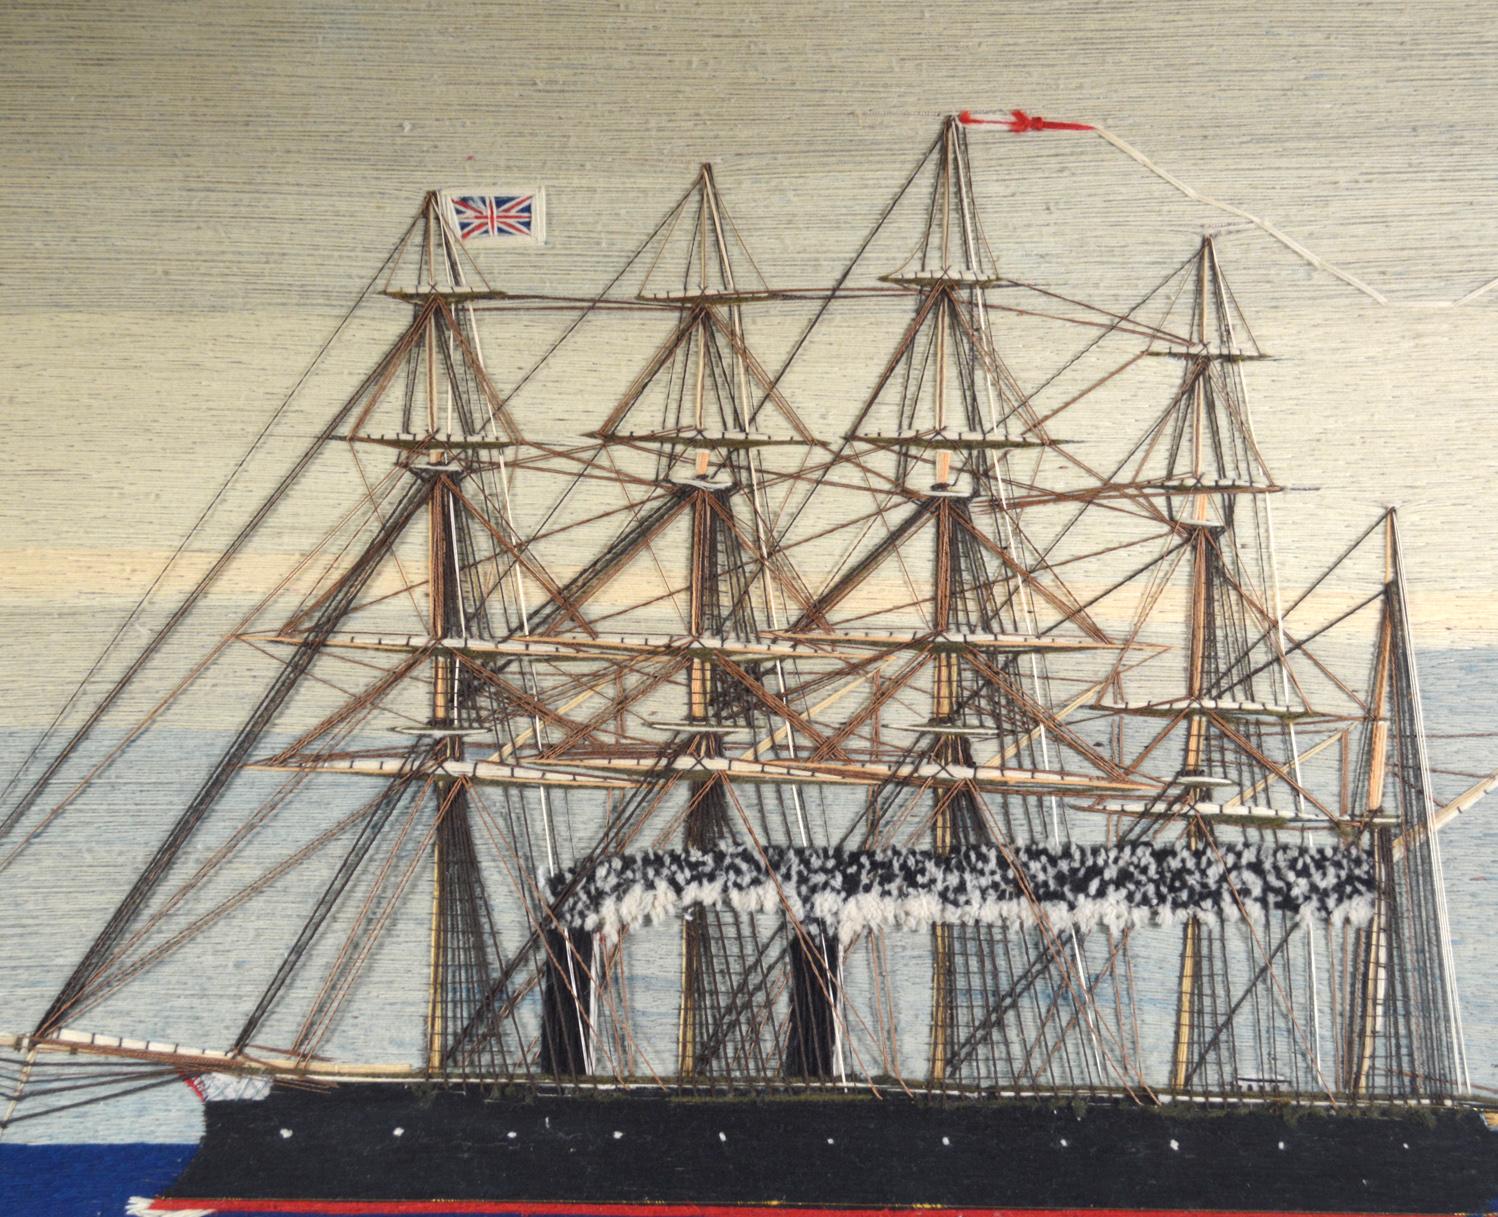 Laine de marin d'un cinq-mâts à vapeur de la Royal Navy, 
HMS Minotaur ou HMS Agincourt,
Cuirassé de classe Minotaure,
Circa 1880

Le lainage de marin représente une vue de bâbord d'un navire à cinq mâts fonctionnant à la vapeur, représentée